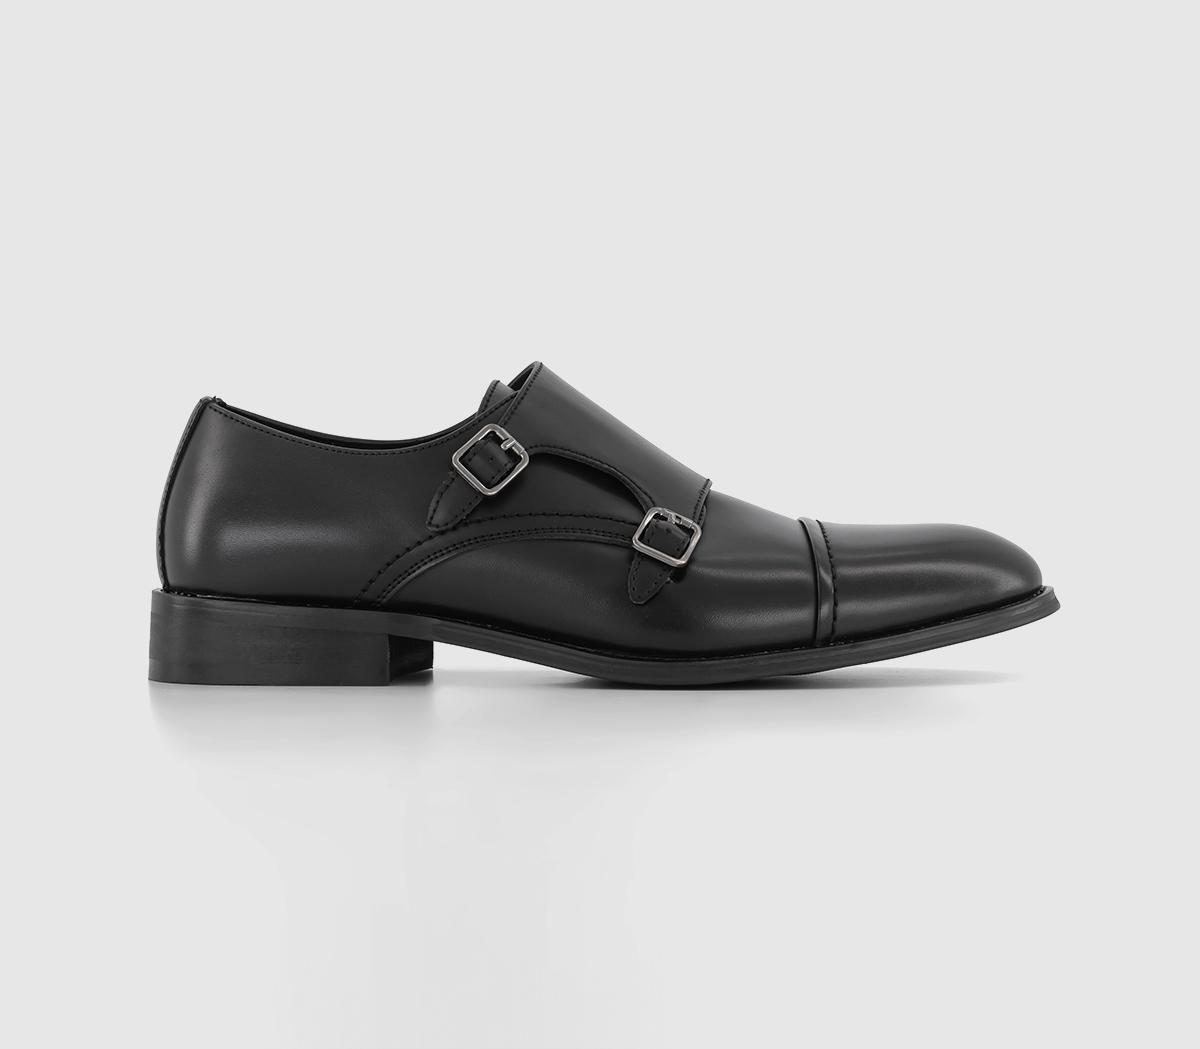 OFFICE Milbourne Double Strap Monk Shoes Black - Men’s Smart Shoes